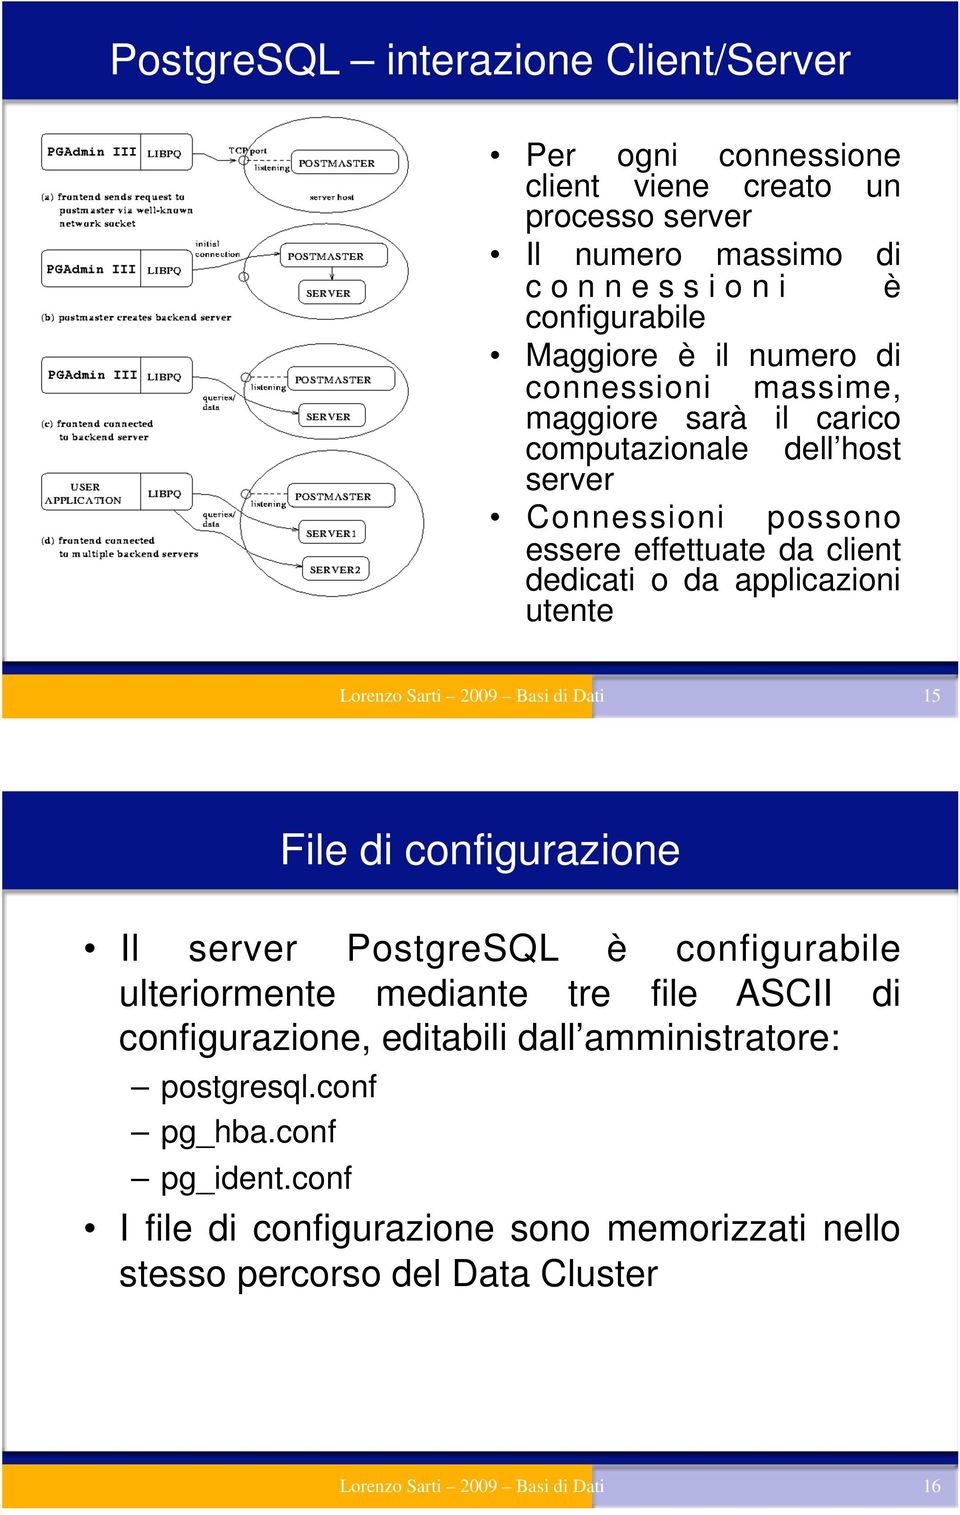 Lorenzo Sarti 2009 Basi di Dati 15 File di configurazione Il server PostgreSQL è configurabile ulteriormente mediante tre file ASCII di configurazione, editabili dall